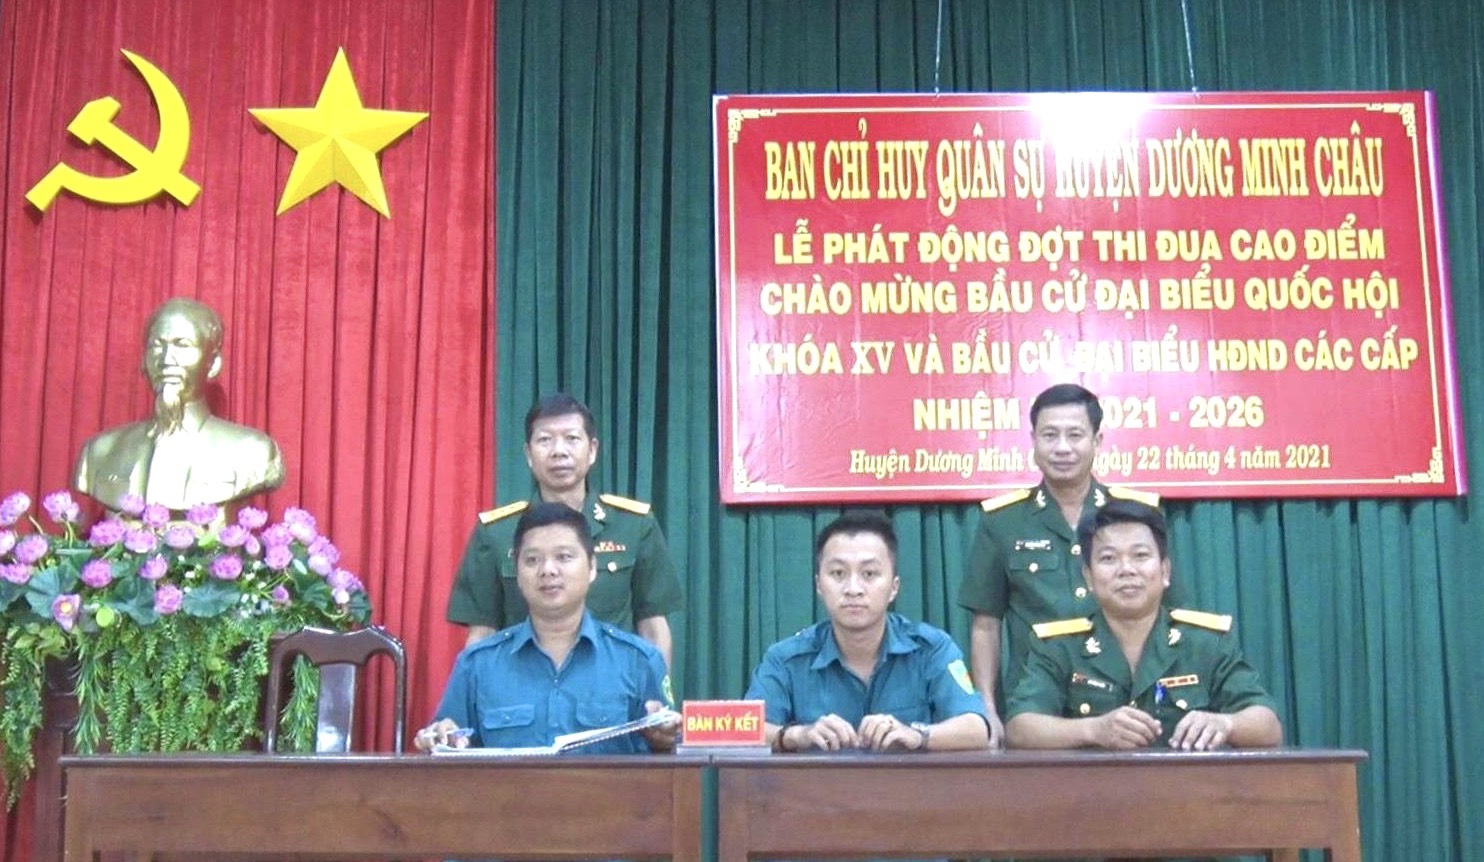 Ban Chỉ huy Quân sự huyện Dương Minh Châu:  Tổ chức phát động thi đua chào mừng bầu cử đại biểu Quốc hội khóa XV và bầu cử đại biểu Hội đồng nhân dân các cấp